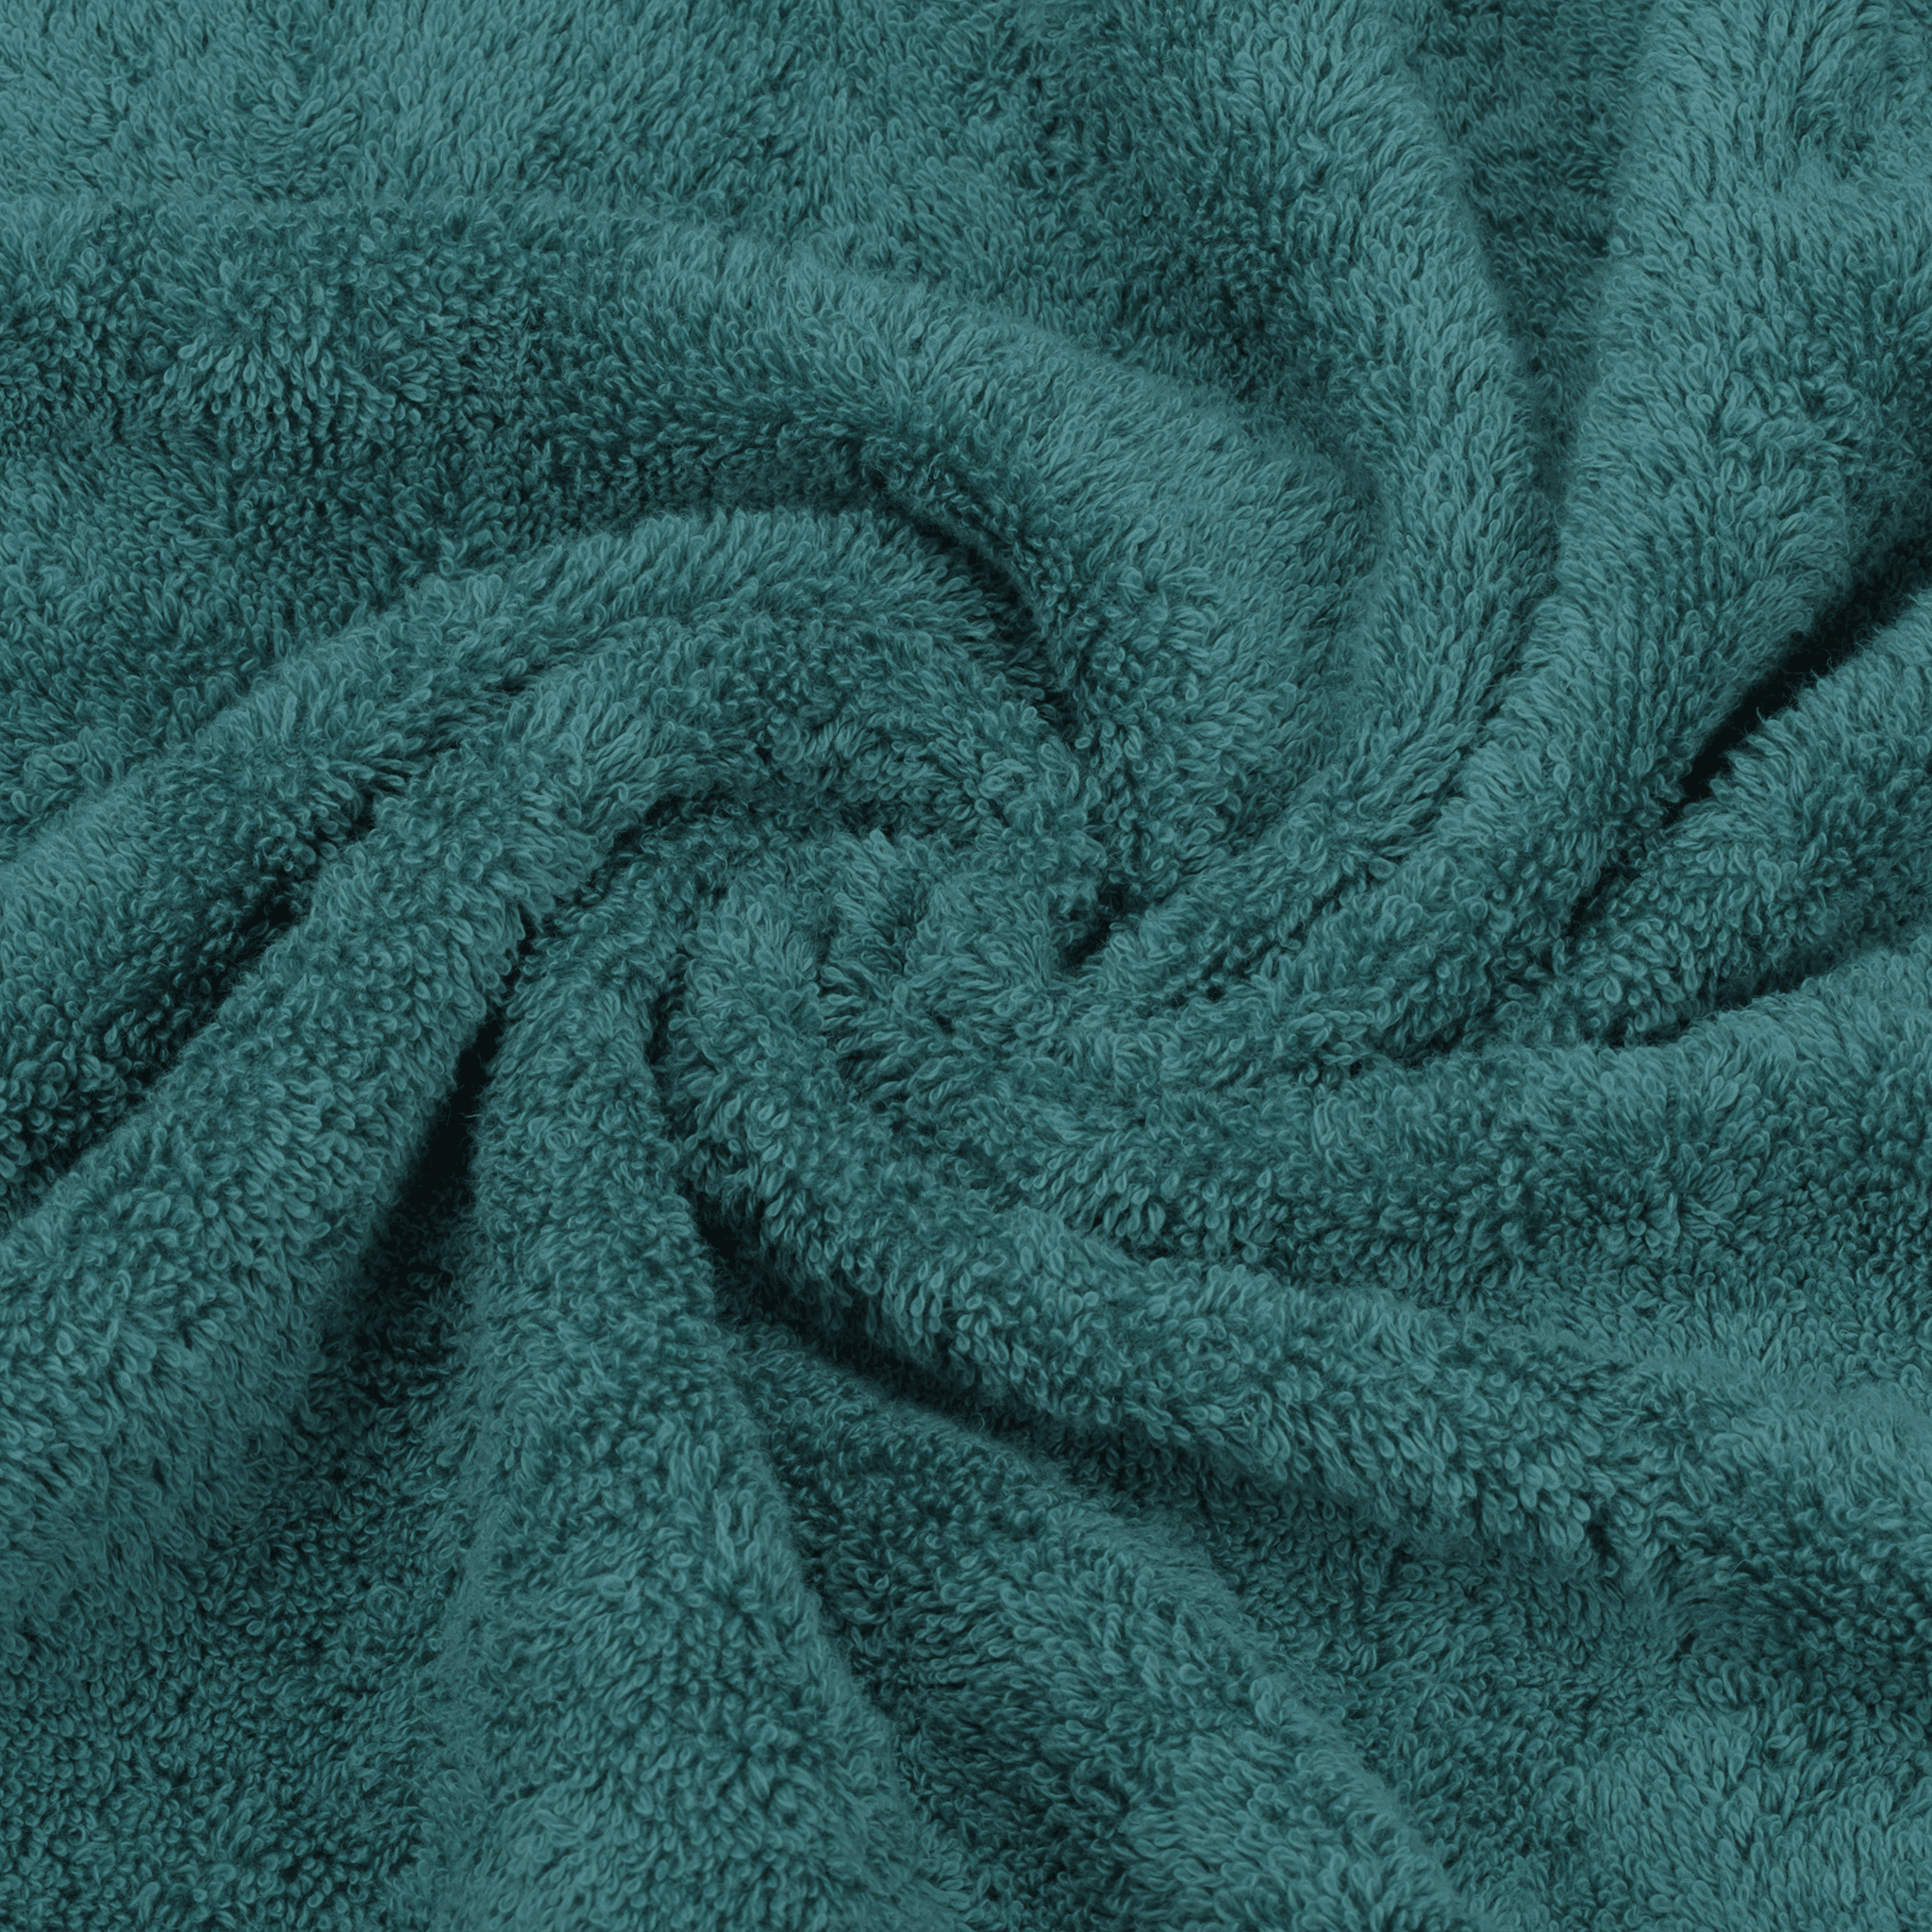 American Soft Linen - 3 Piece Turkish Cotton Towel Set - Colonial-Blue - 7